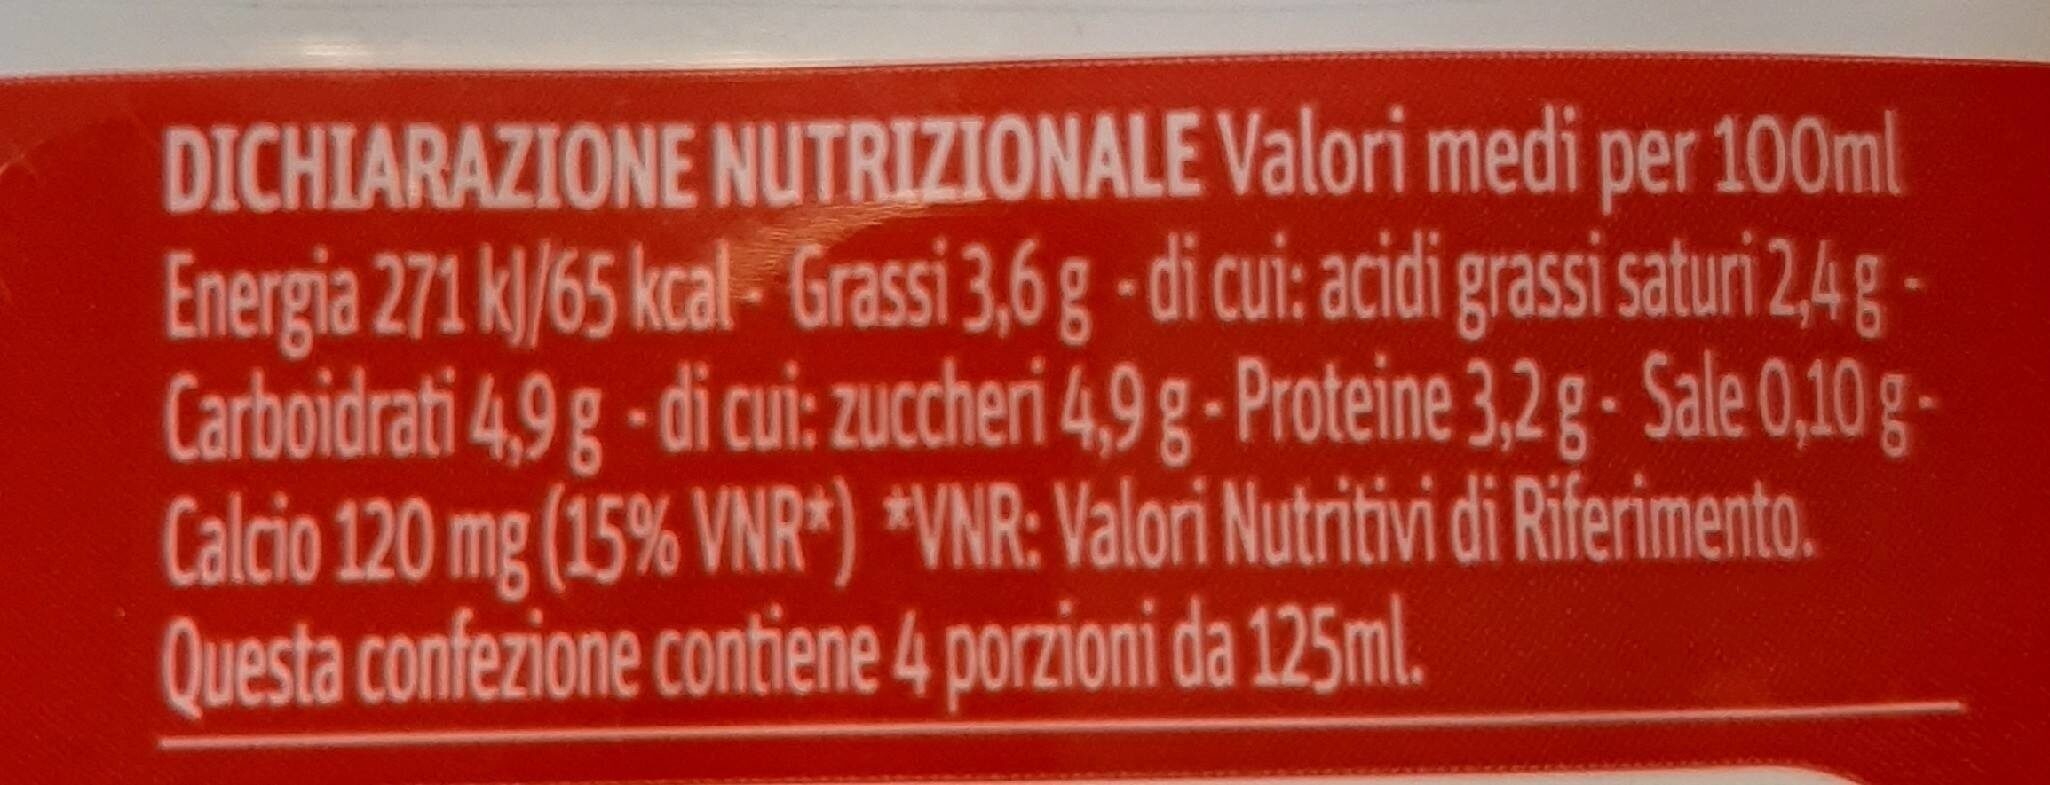 Latte 100% italiano - حقائق غذائية - it